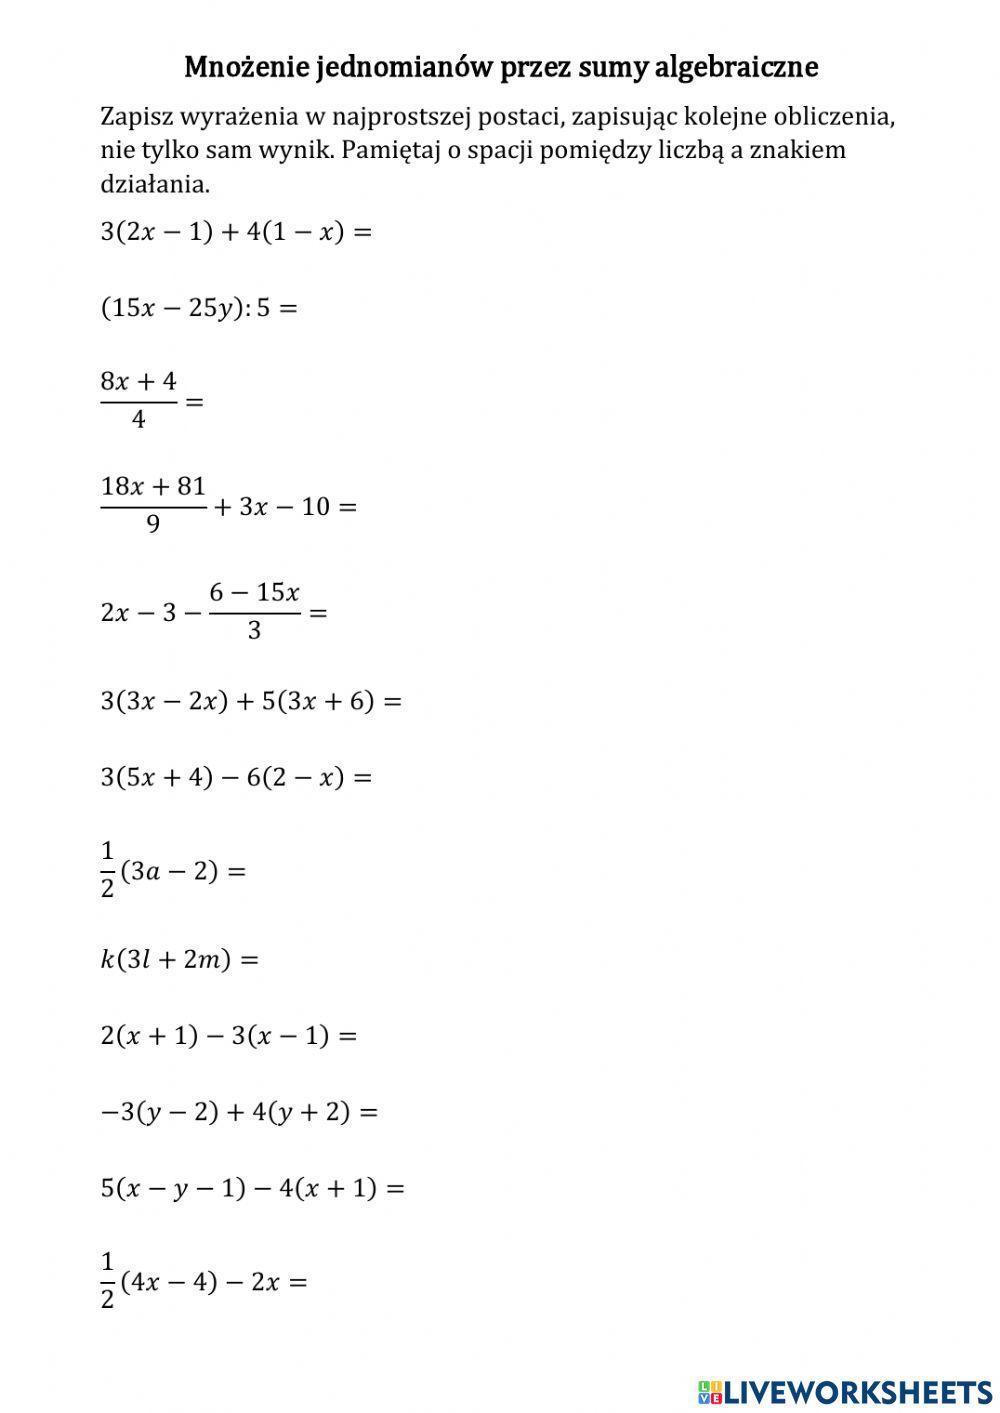 Mnożenie jednomianów przez sumy algebraiczne